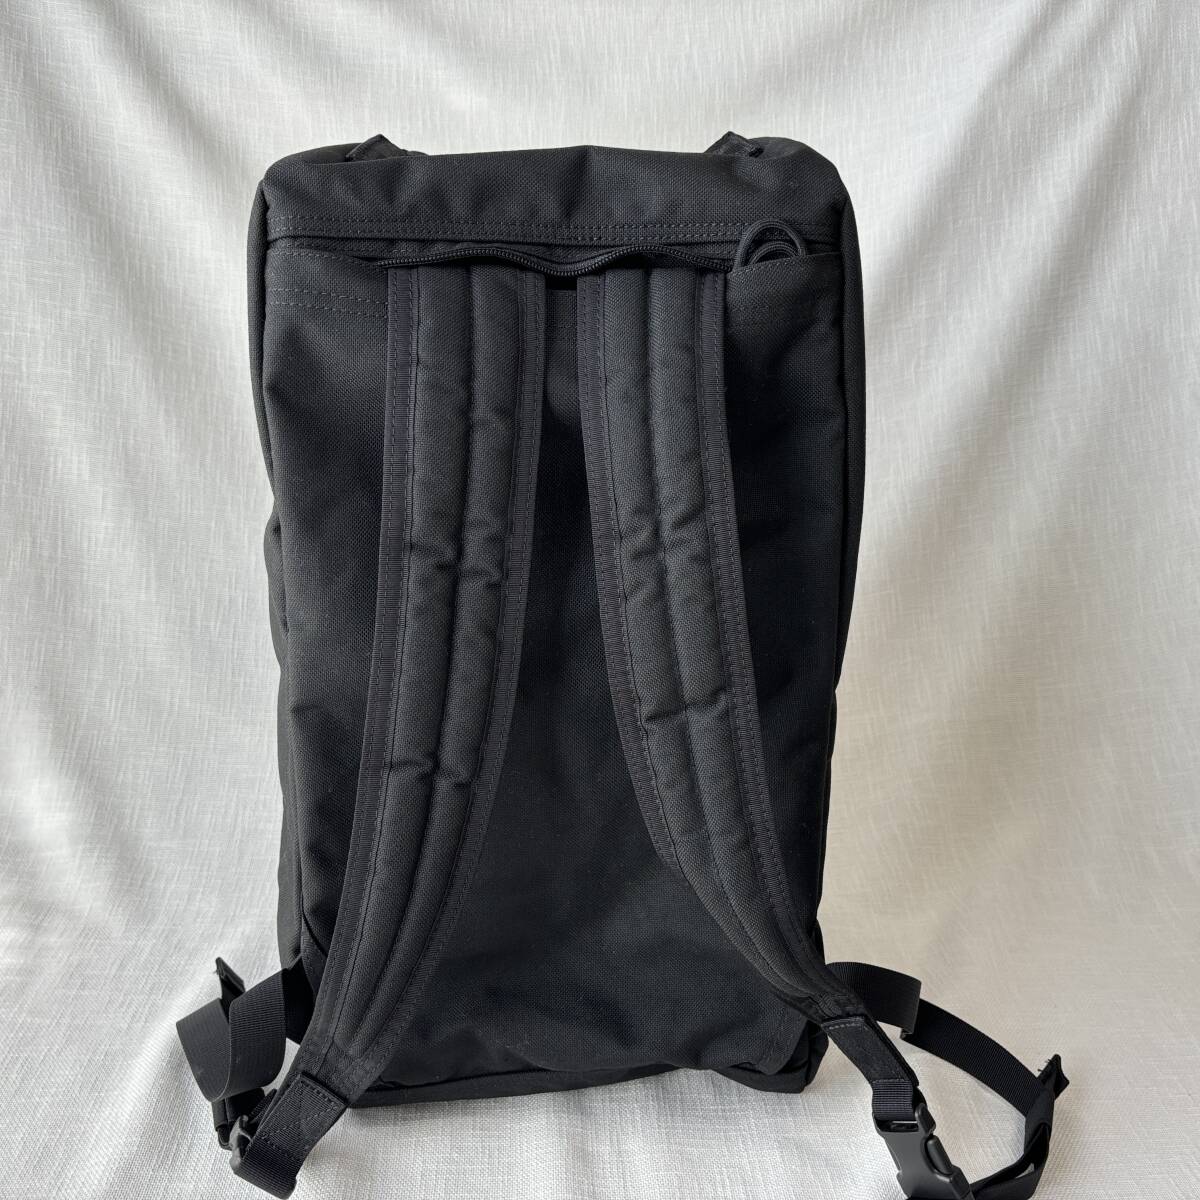 #1 иен ~ < прекрасный товар!!>#BRIEFING Briefing 3way сумка "Boston bag" ручная сумка рюкзак рюкзак плечо большая вместимость путешествие черный чёрный 